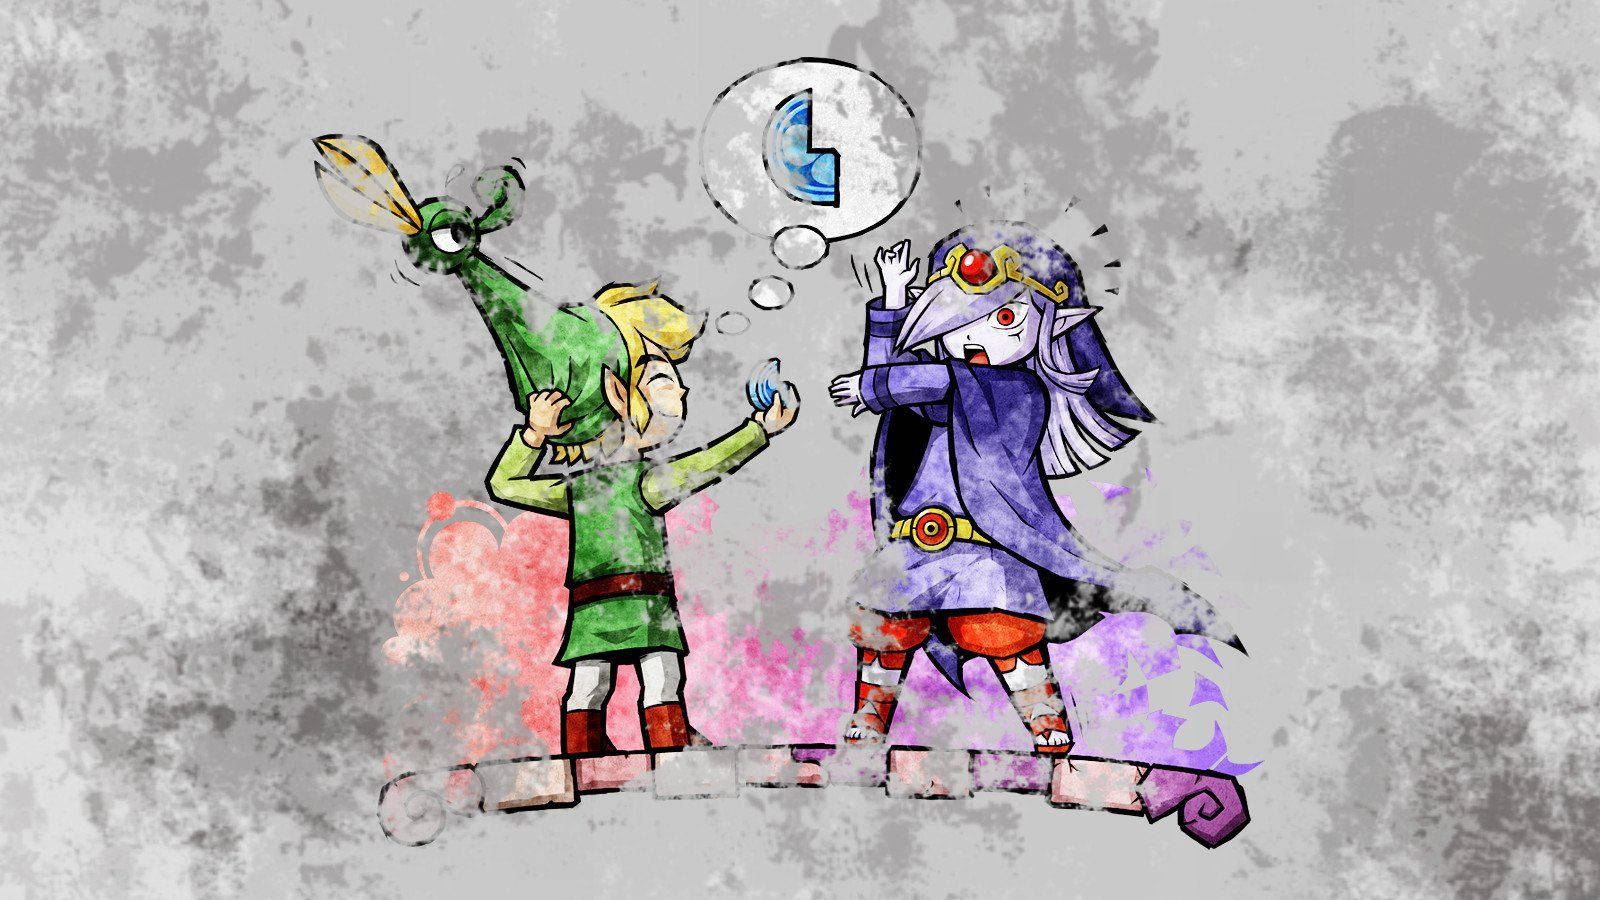 Link and Vaati - Epic Conflict in the Legend of Zelda Wallpaper